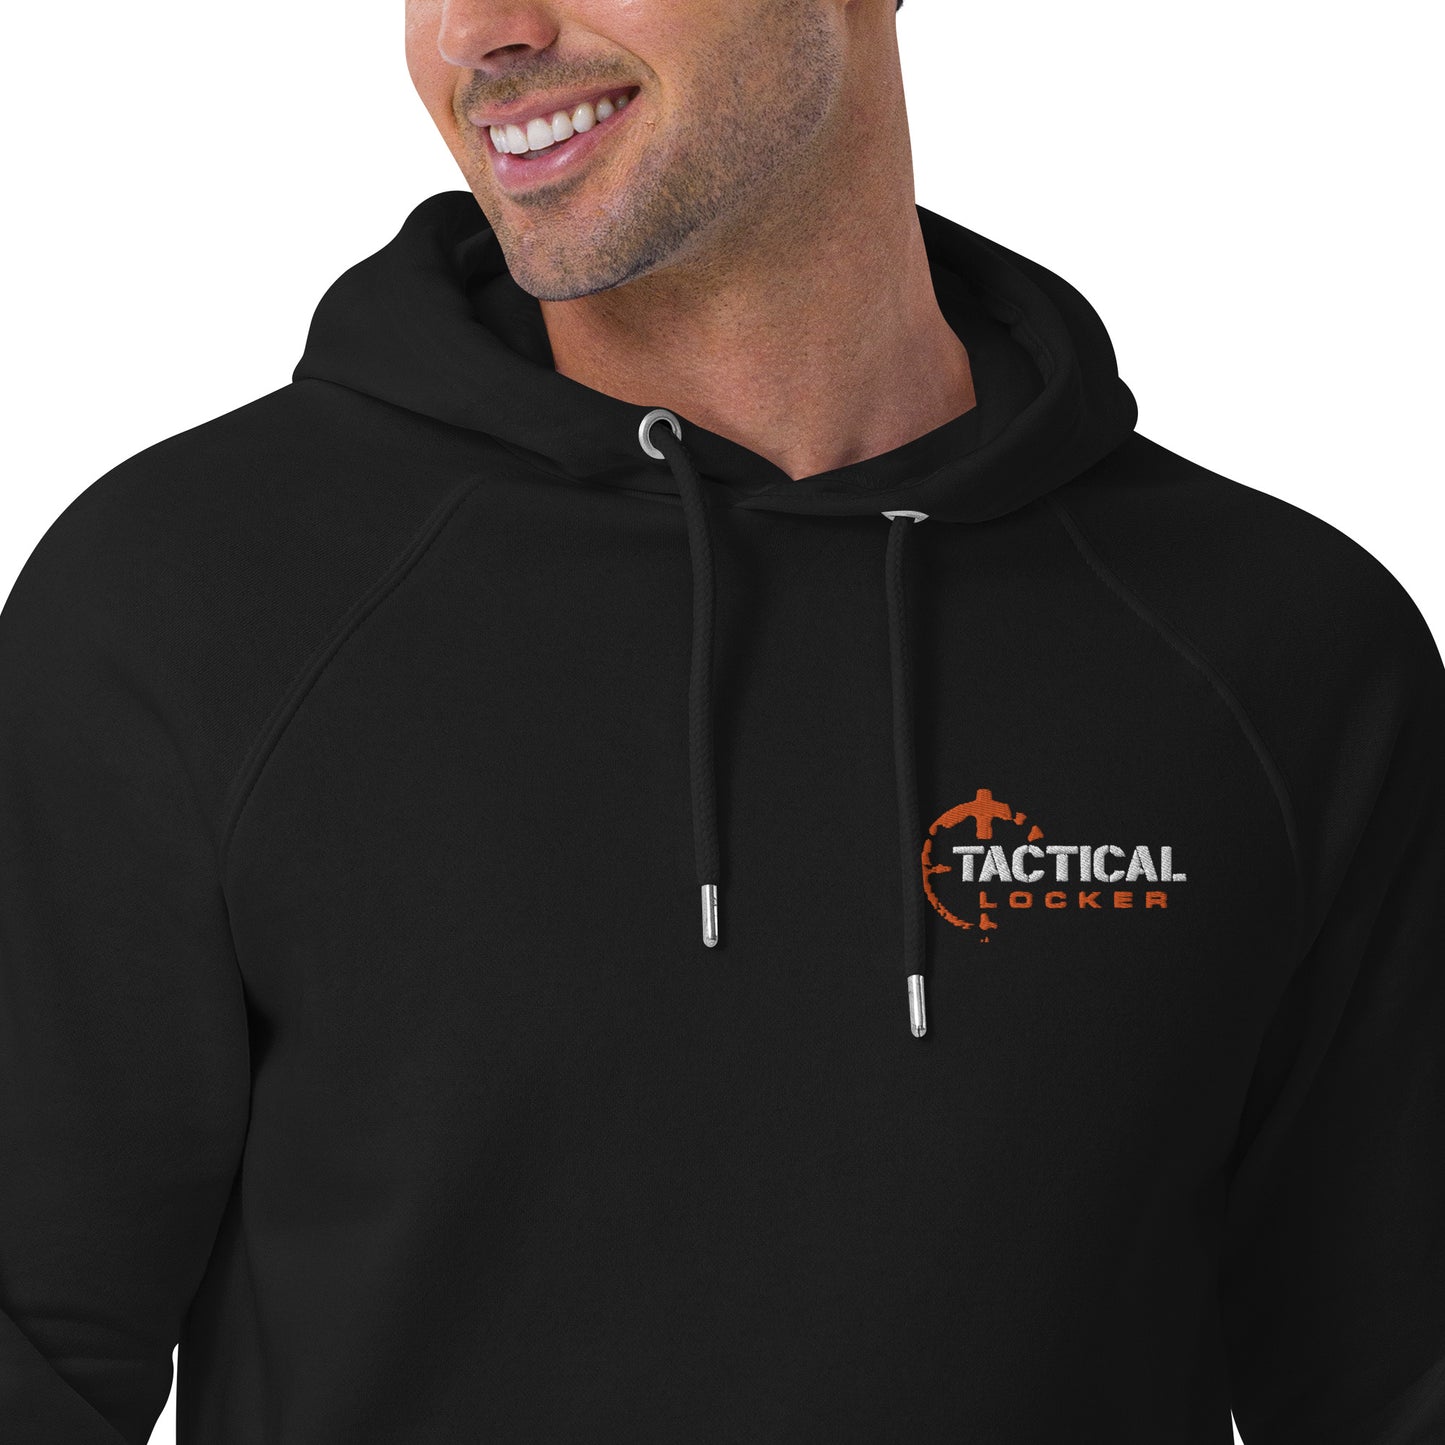 Tactical Locker™ Official hoodie